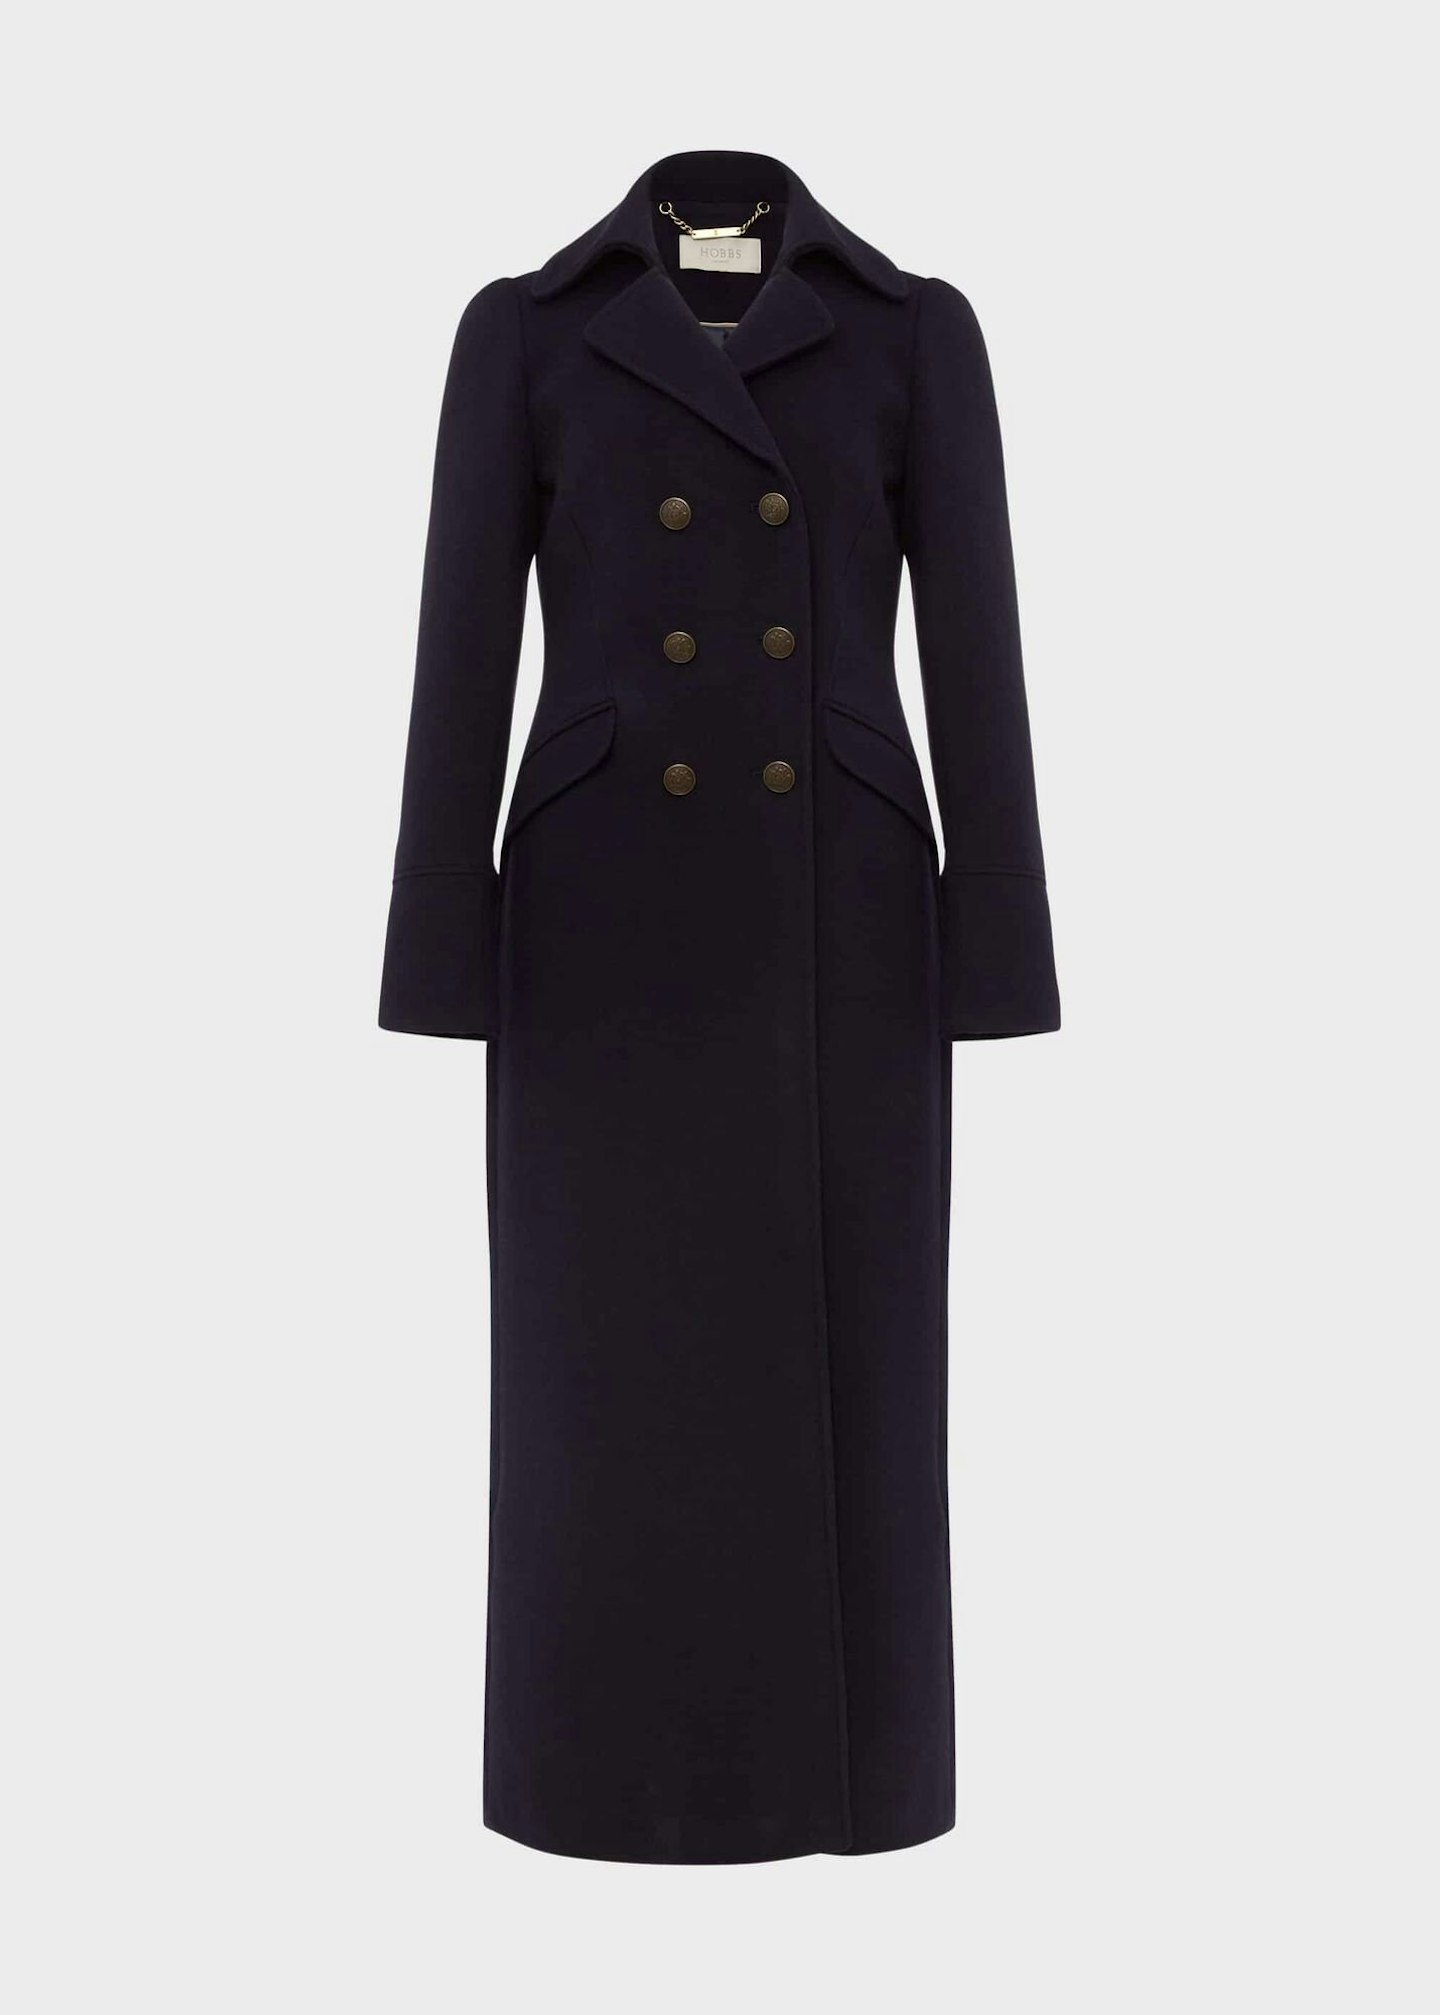 Hobbs, Brenna Wool-Blend Maxi Coat, £349